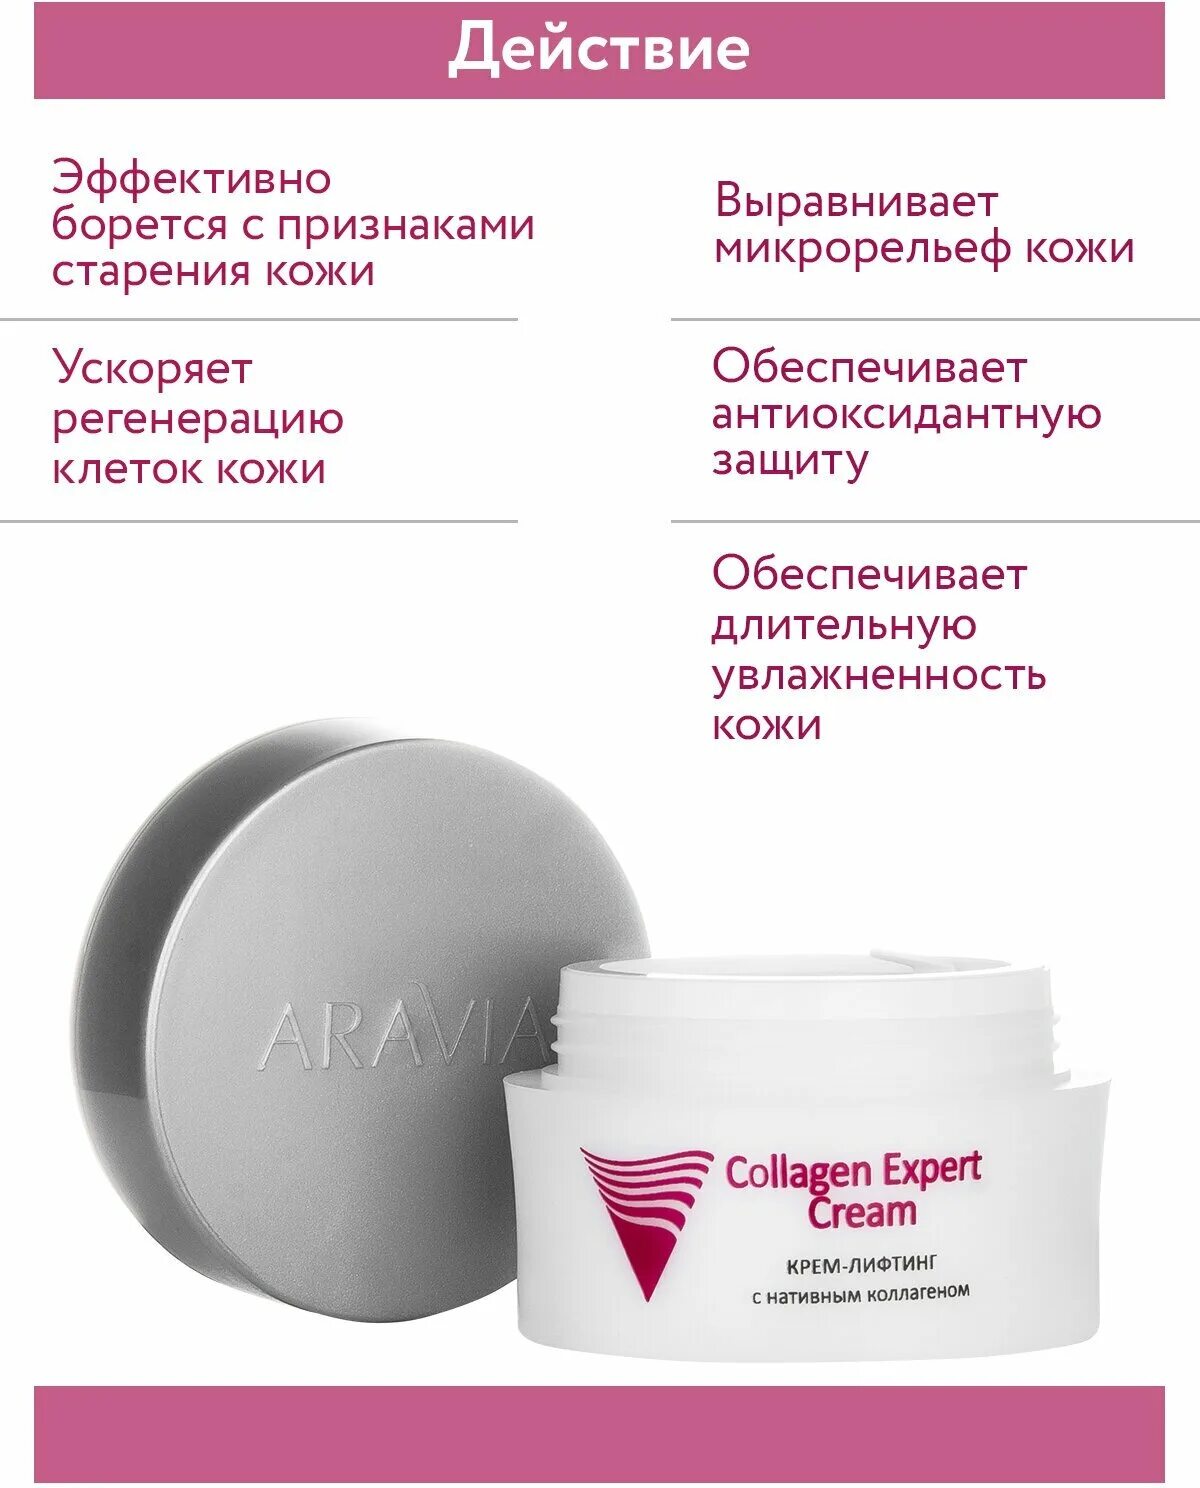 Hydrating sunscreen aravia spf 50. Крем Aravia крем для лица. Aravia Collagen Expert Cream. Аравия крем с коллагеном. Аравия крем лифтинговый с аминокислотами.